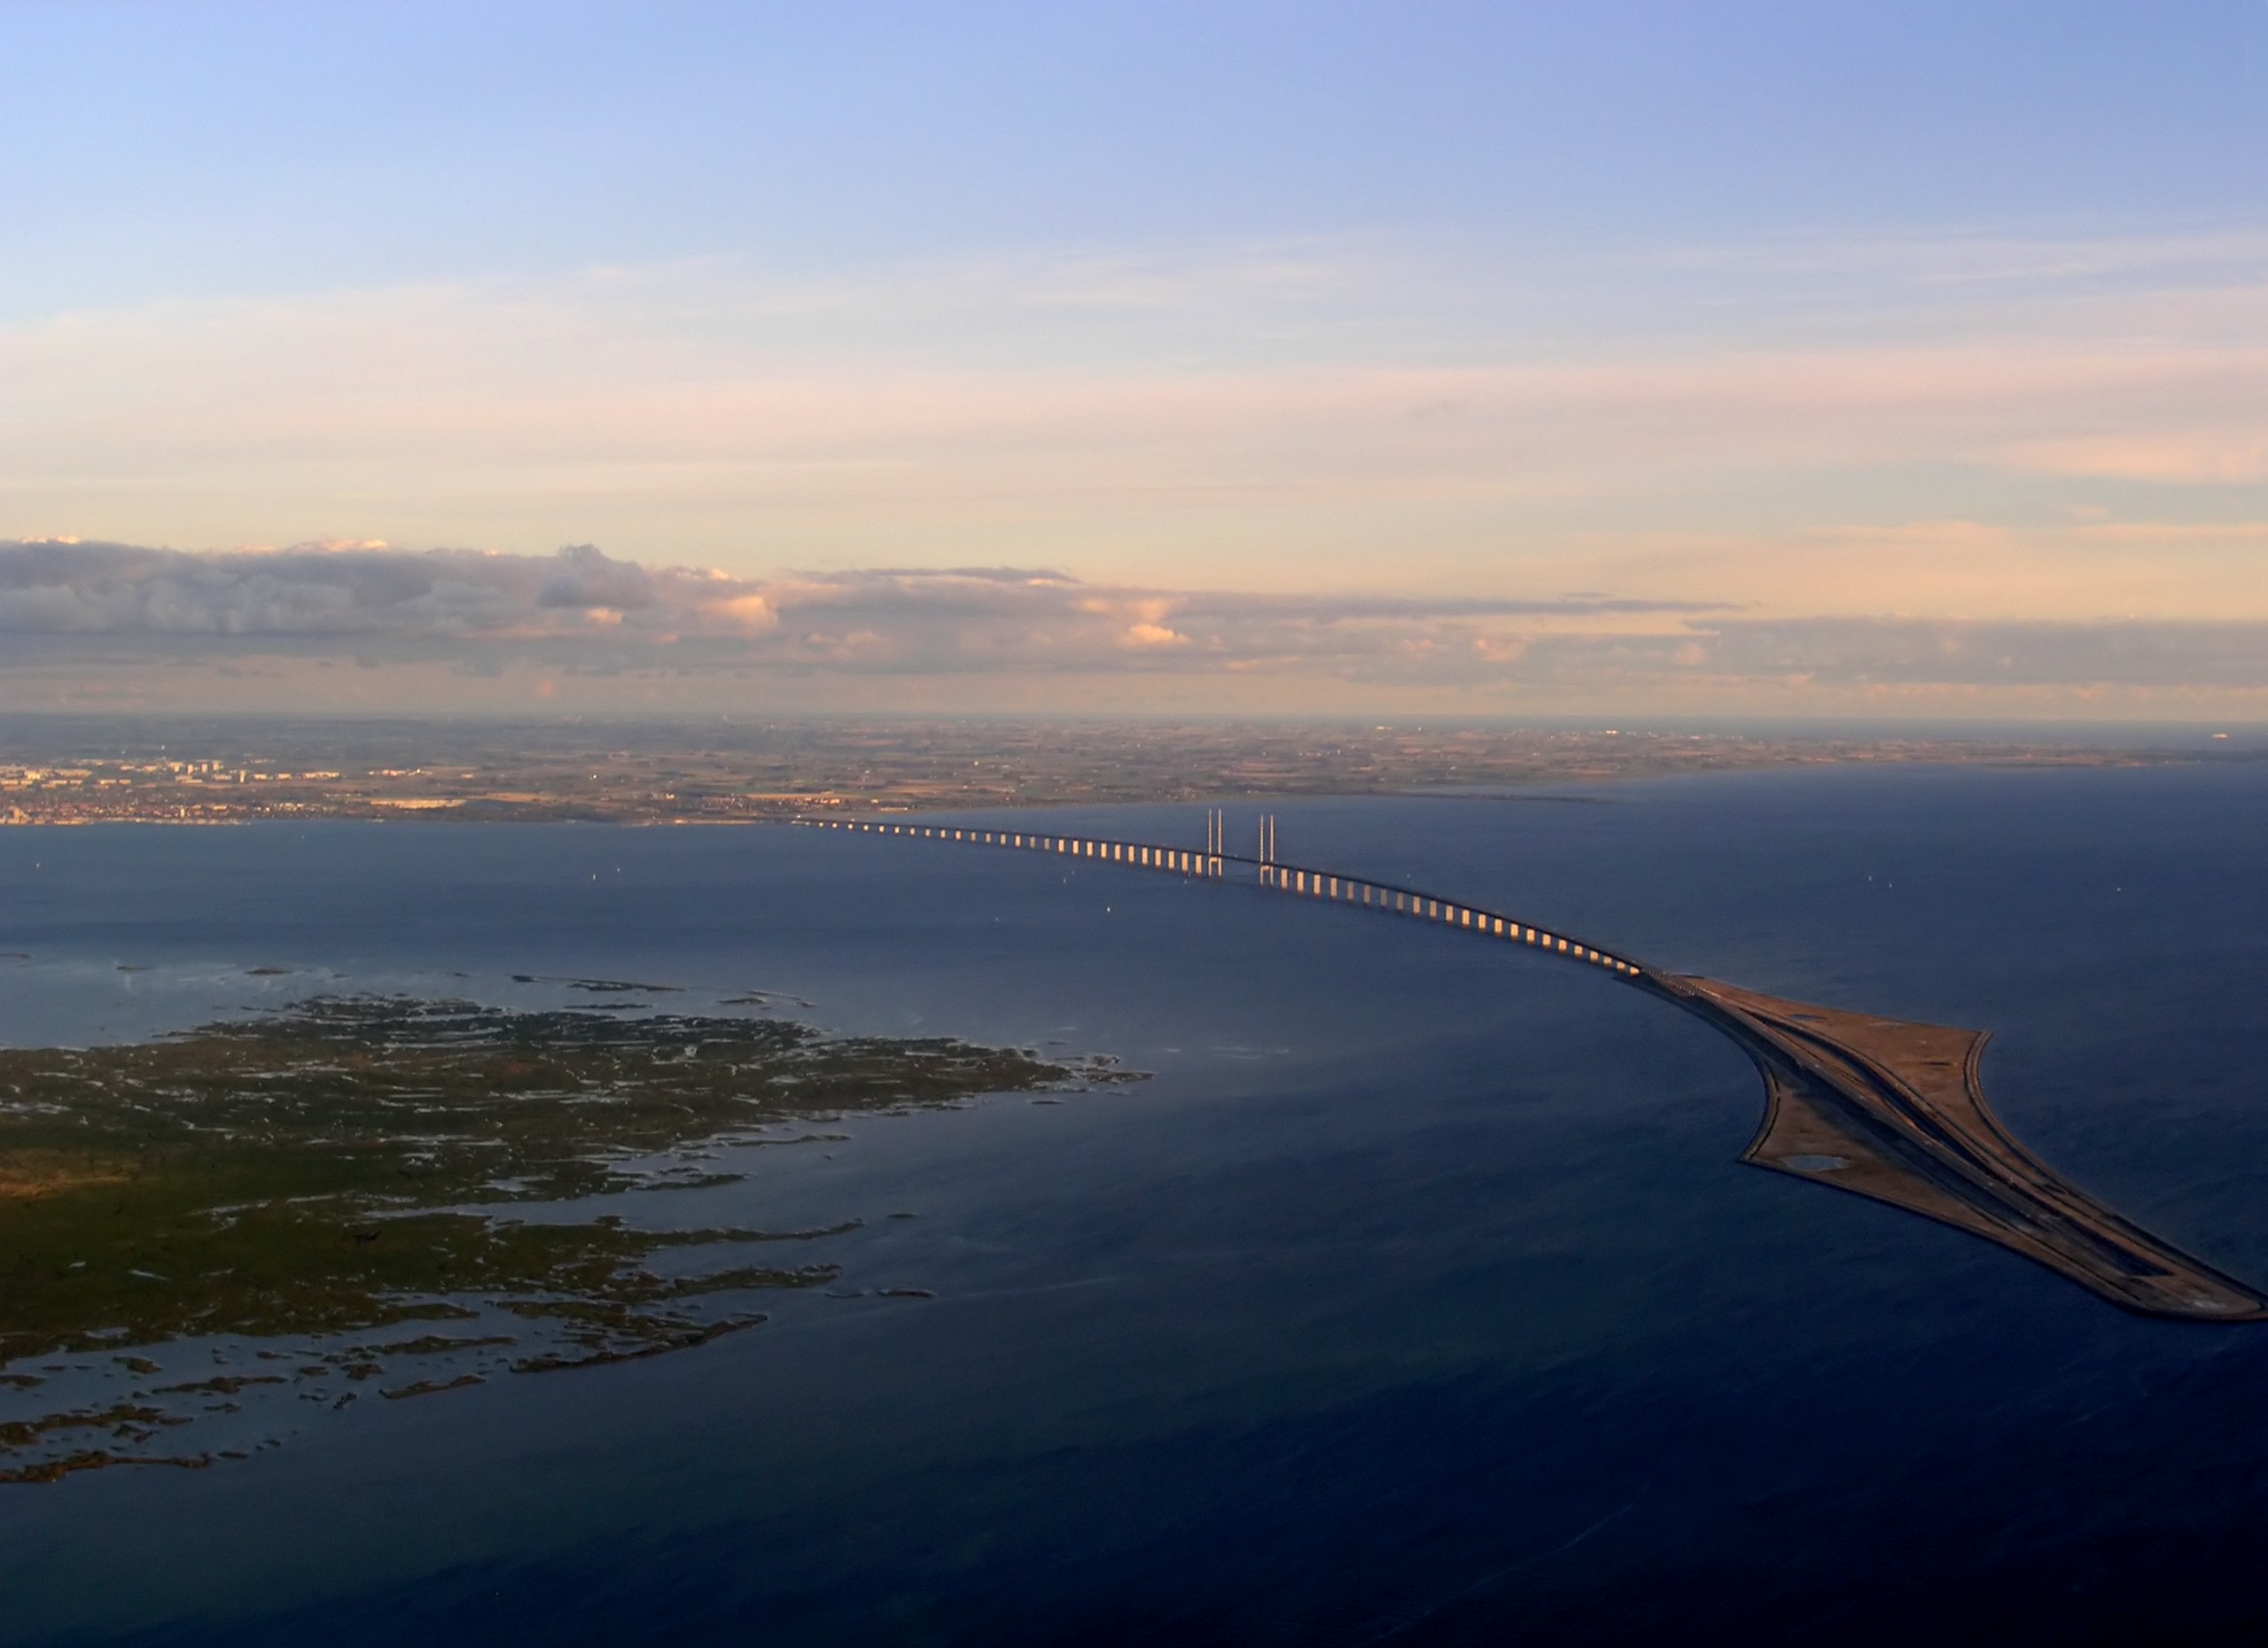 Вид со стороны Копенгагена. Слева — остров Сальтхольм, справа — искусственный остров Пеберхольм. На горизонте виден Мальмё.